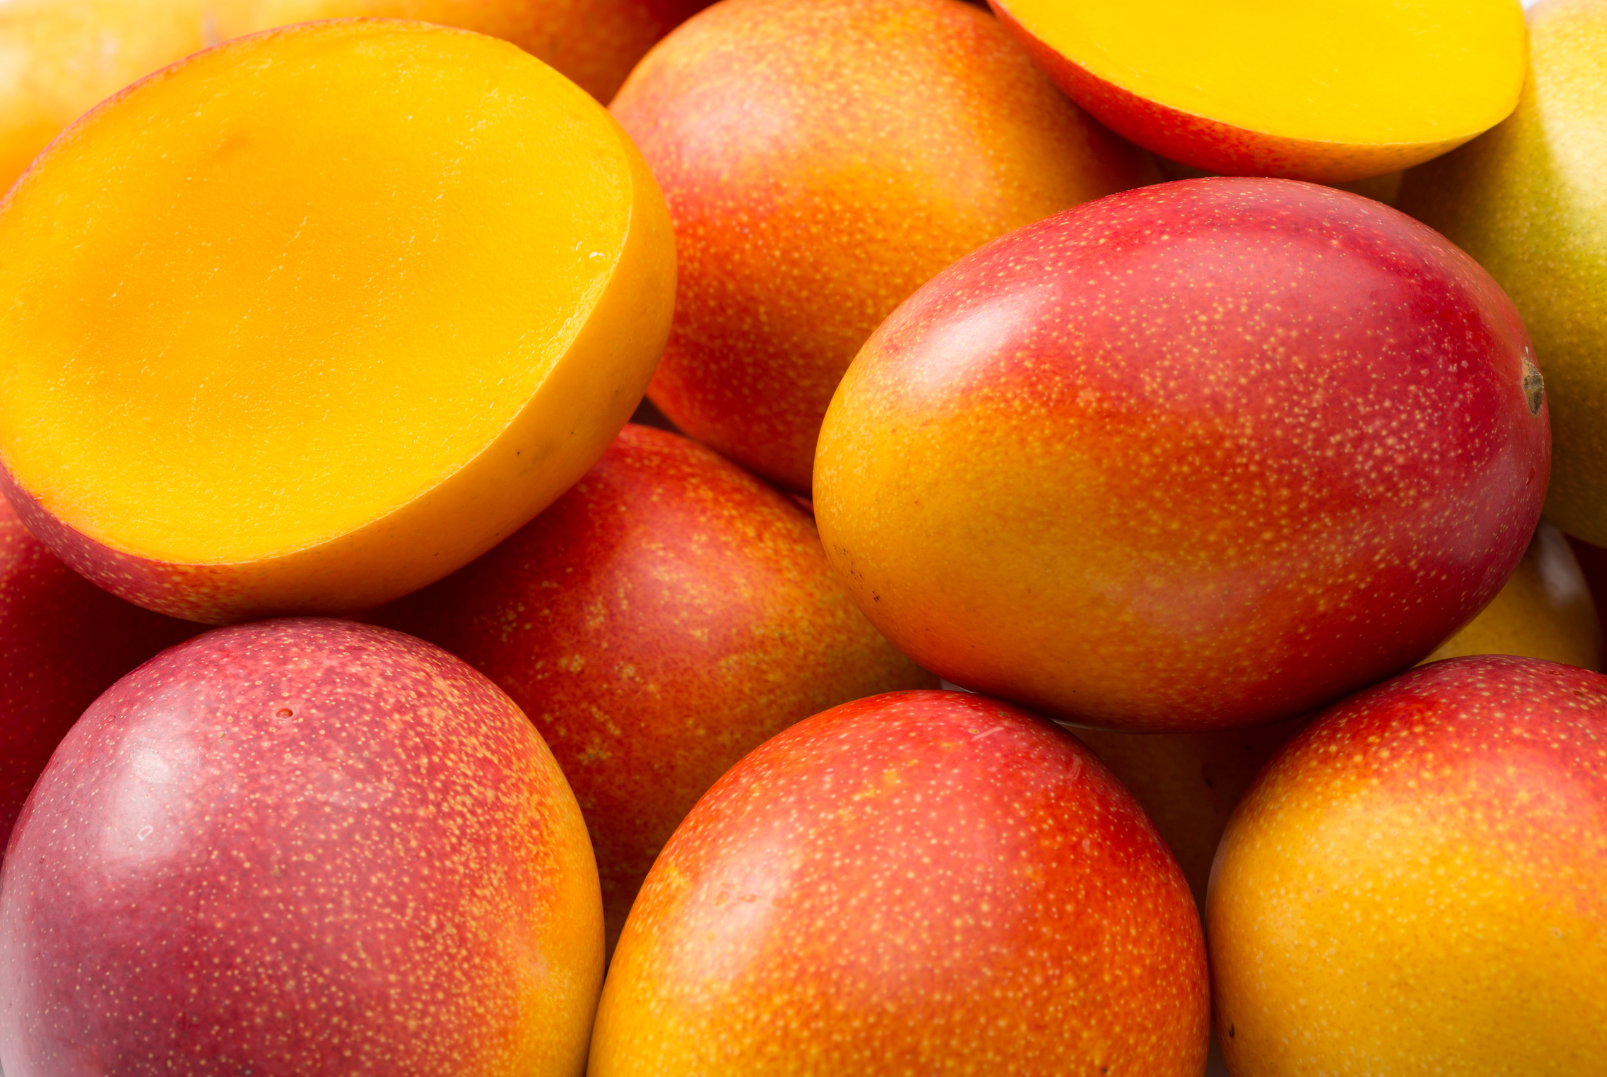 Valeur nutritionnelle et bienfaits pour la santé de la mangue - Wikifarmer